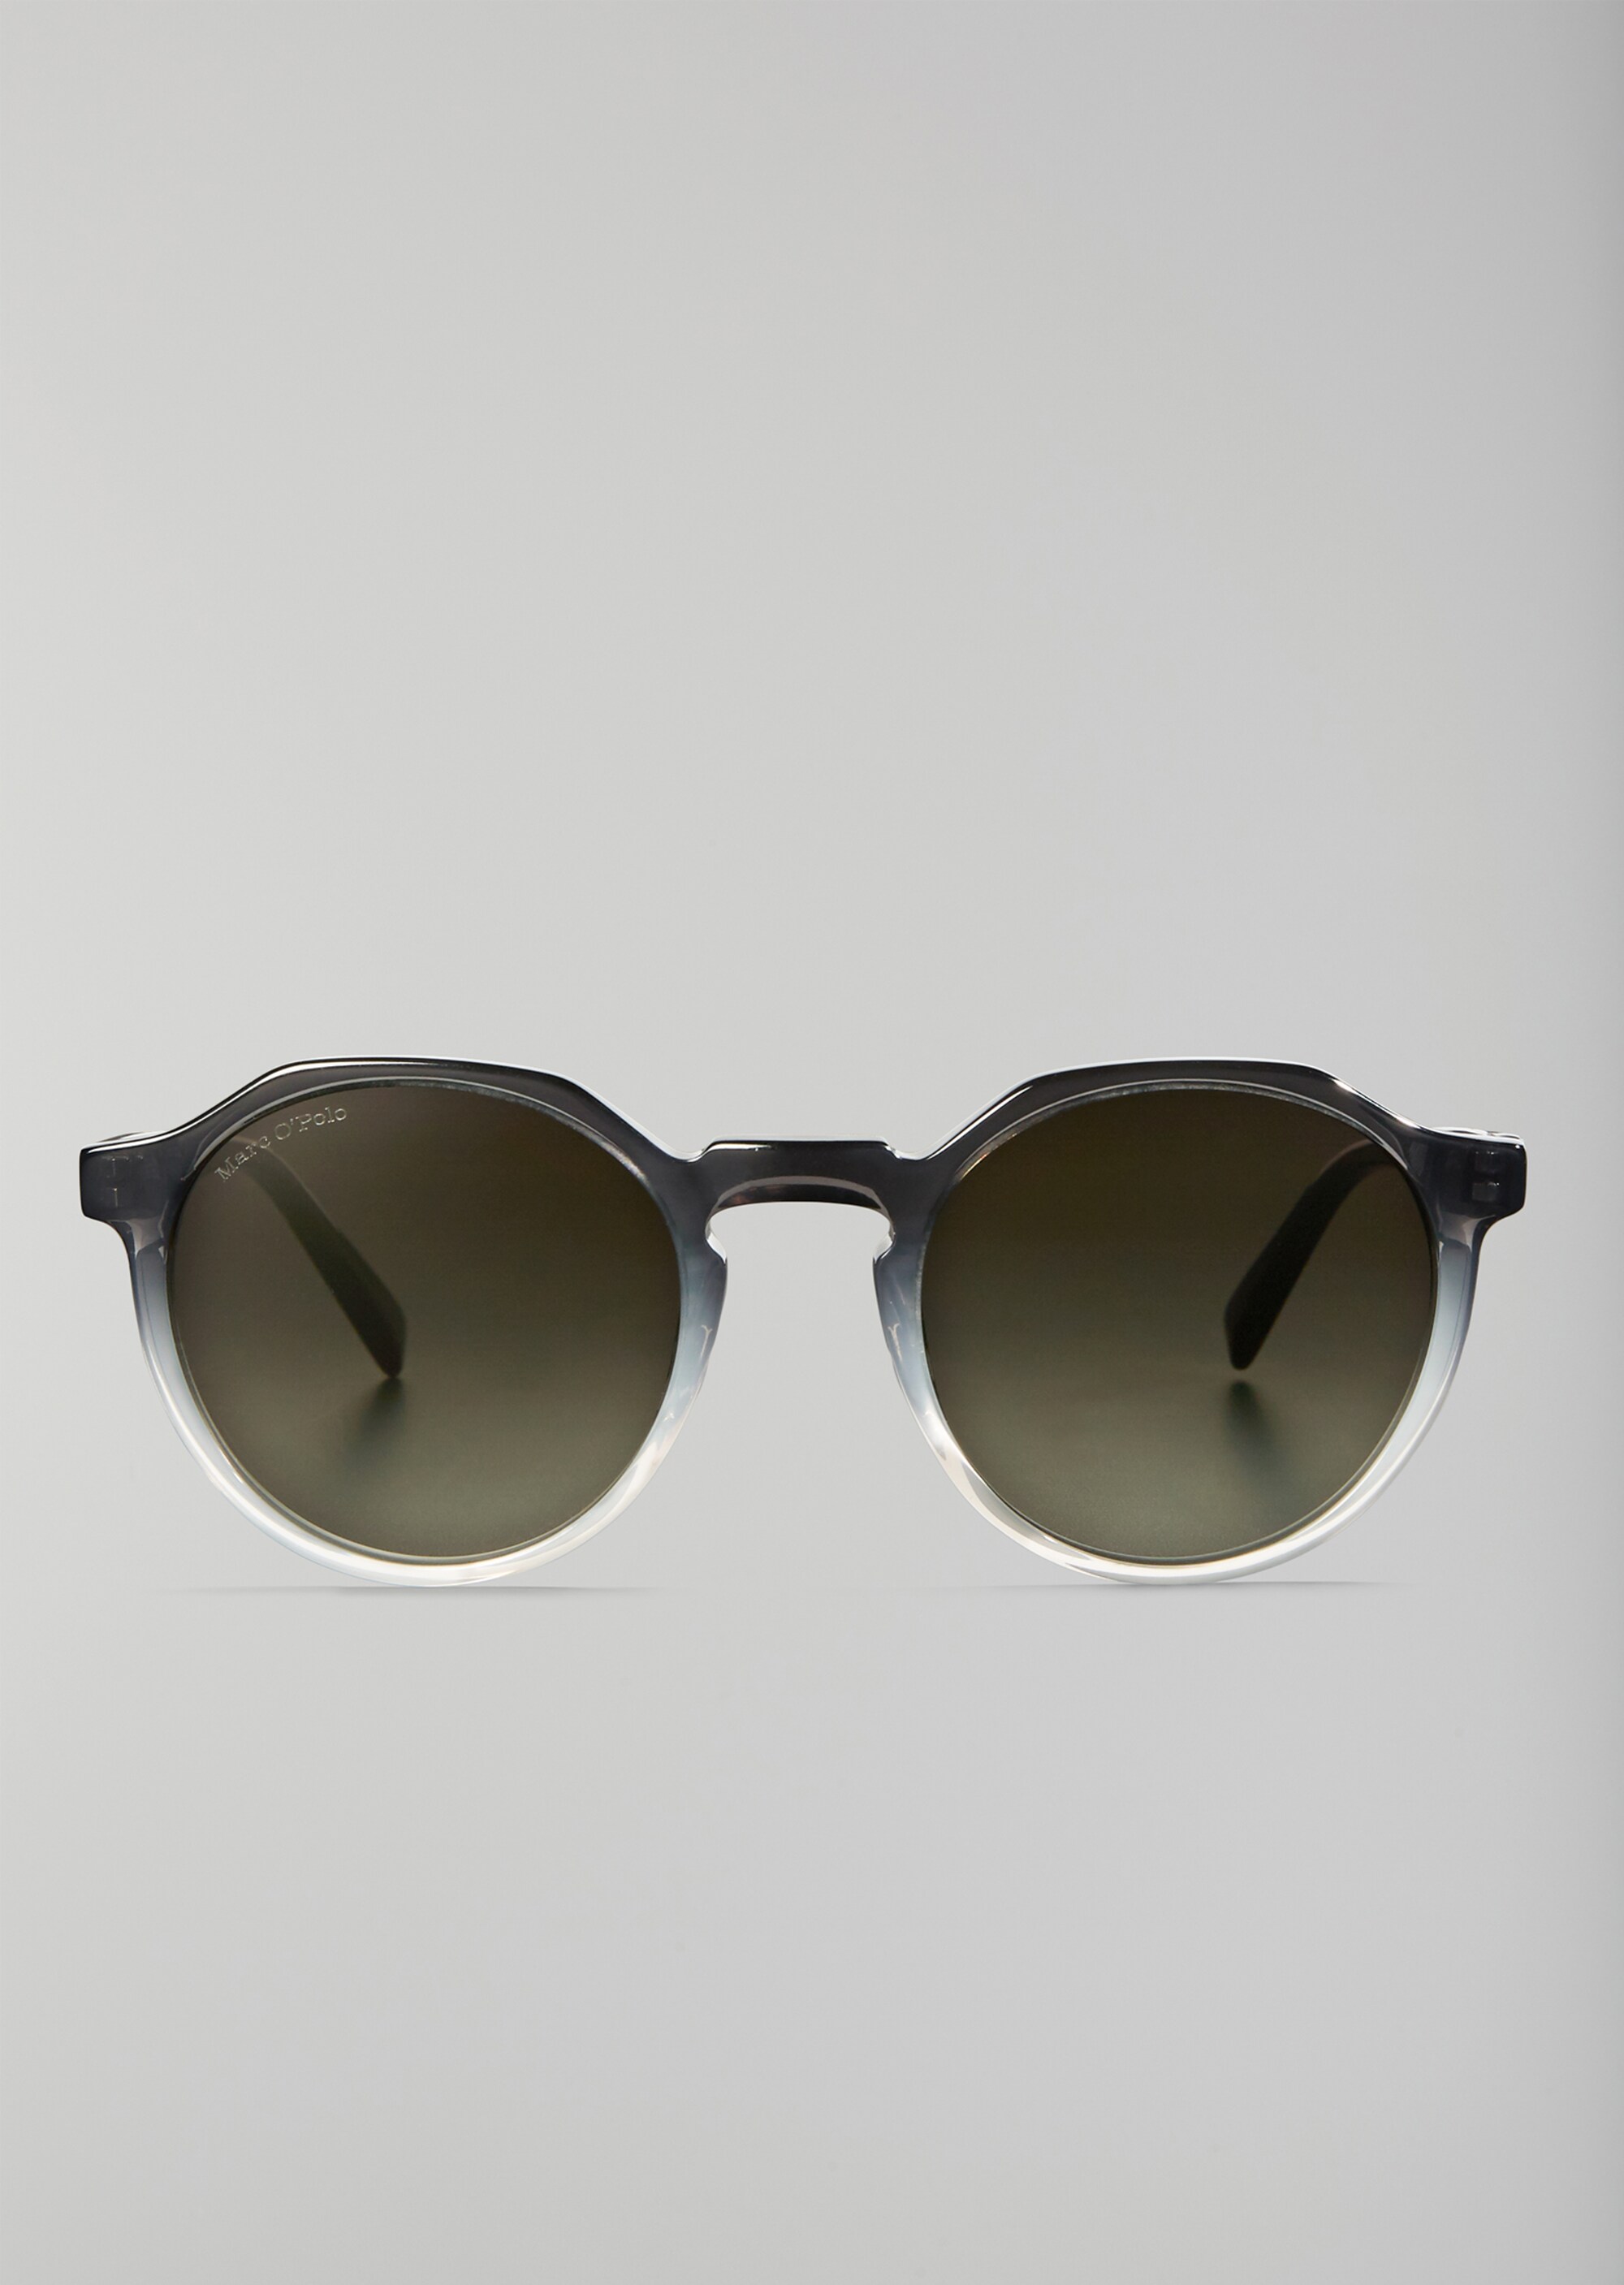 Accessoires Sonnenbrillen runde Sonnenbrillen Sonnenbrille Graublau Glas 